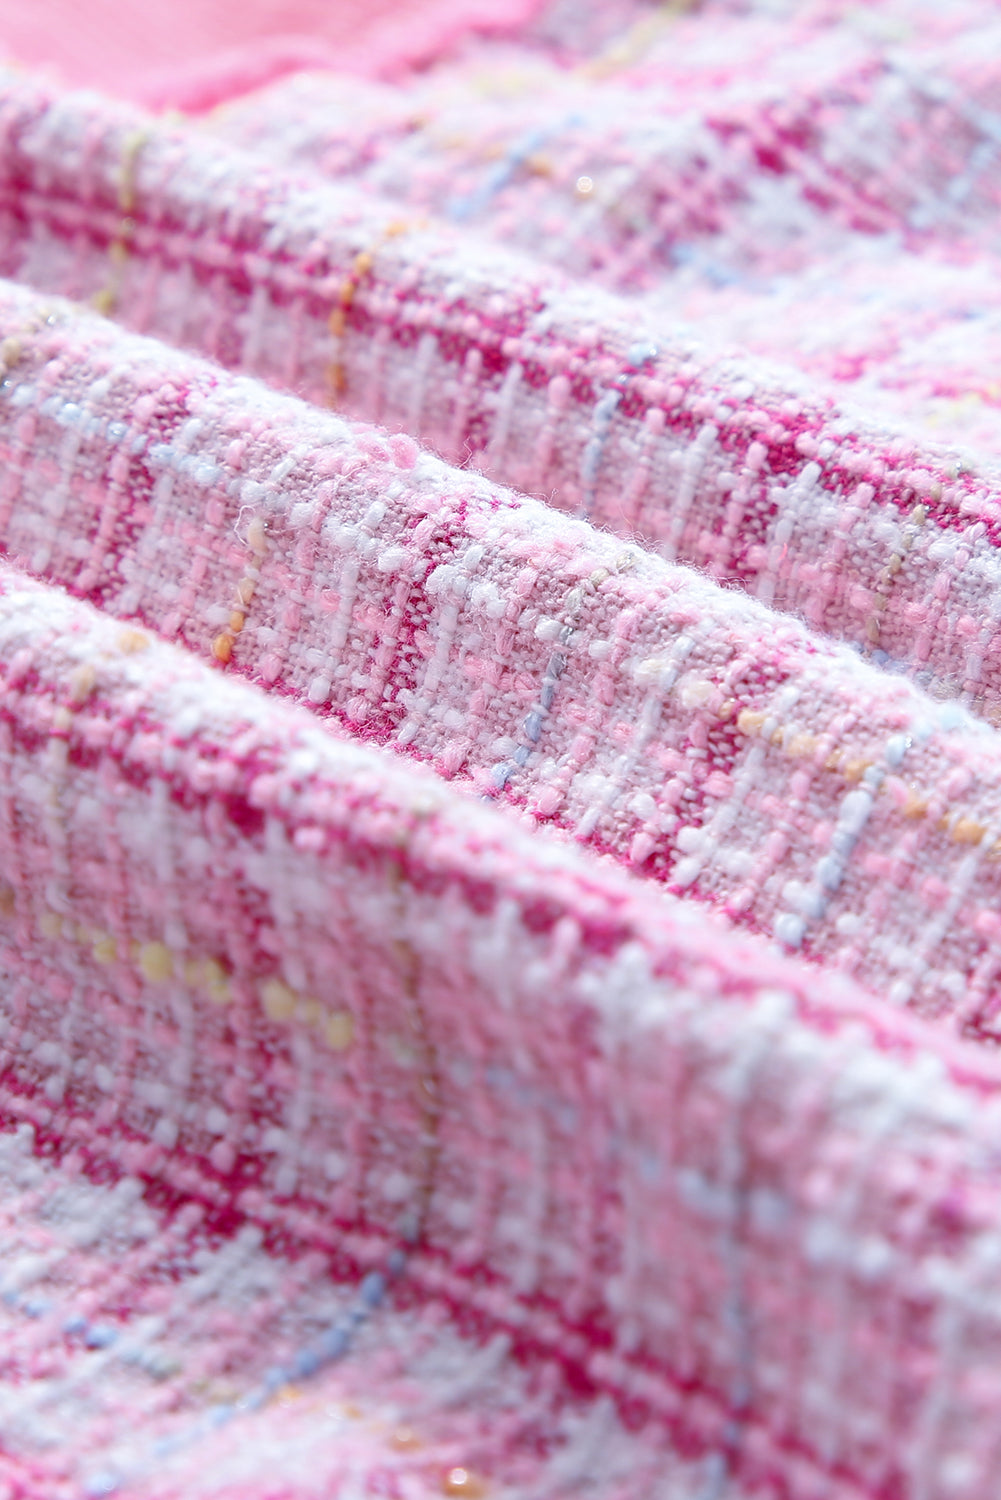 Veste boutonnée en patchwork à carreaux en tweed effiloché rose